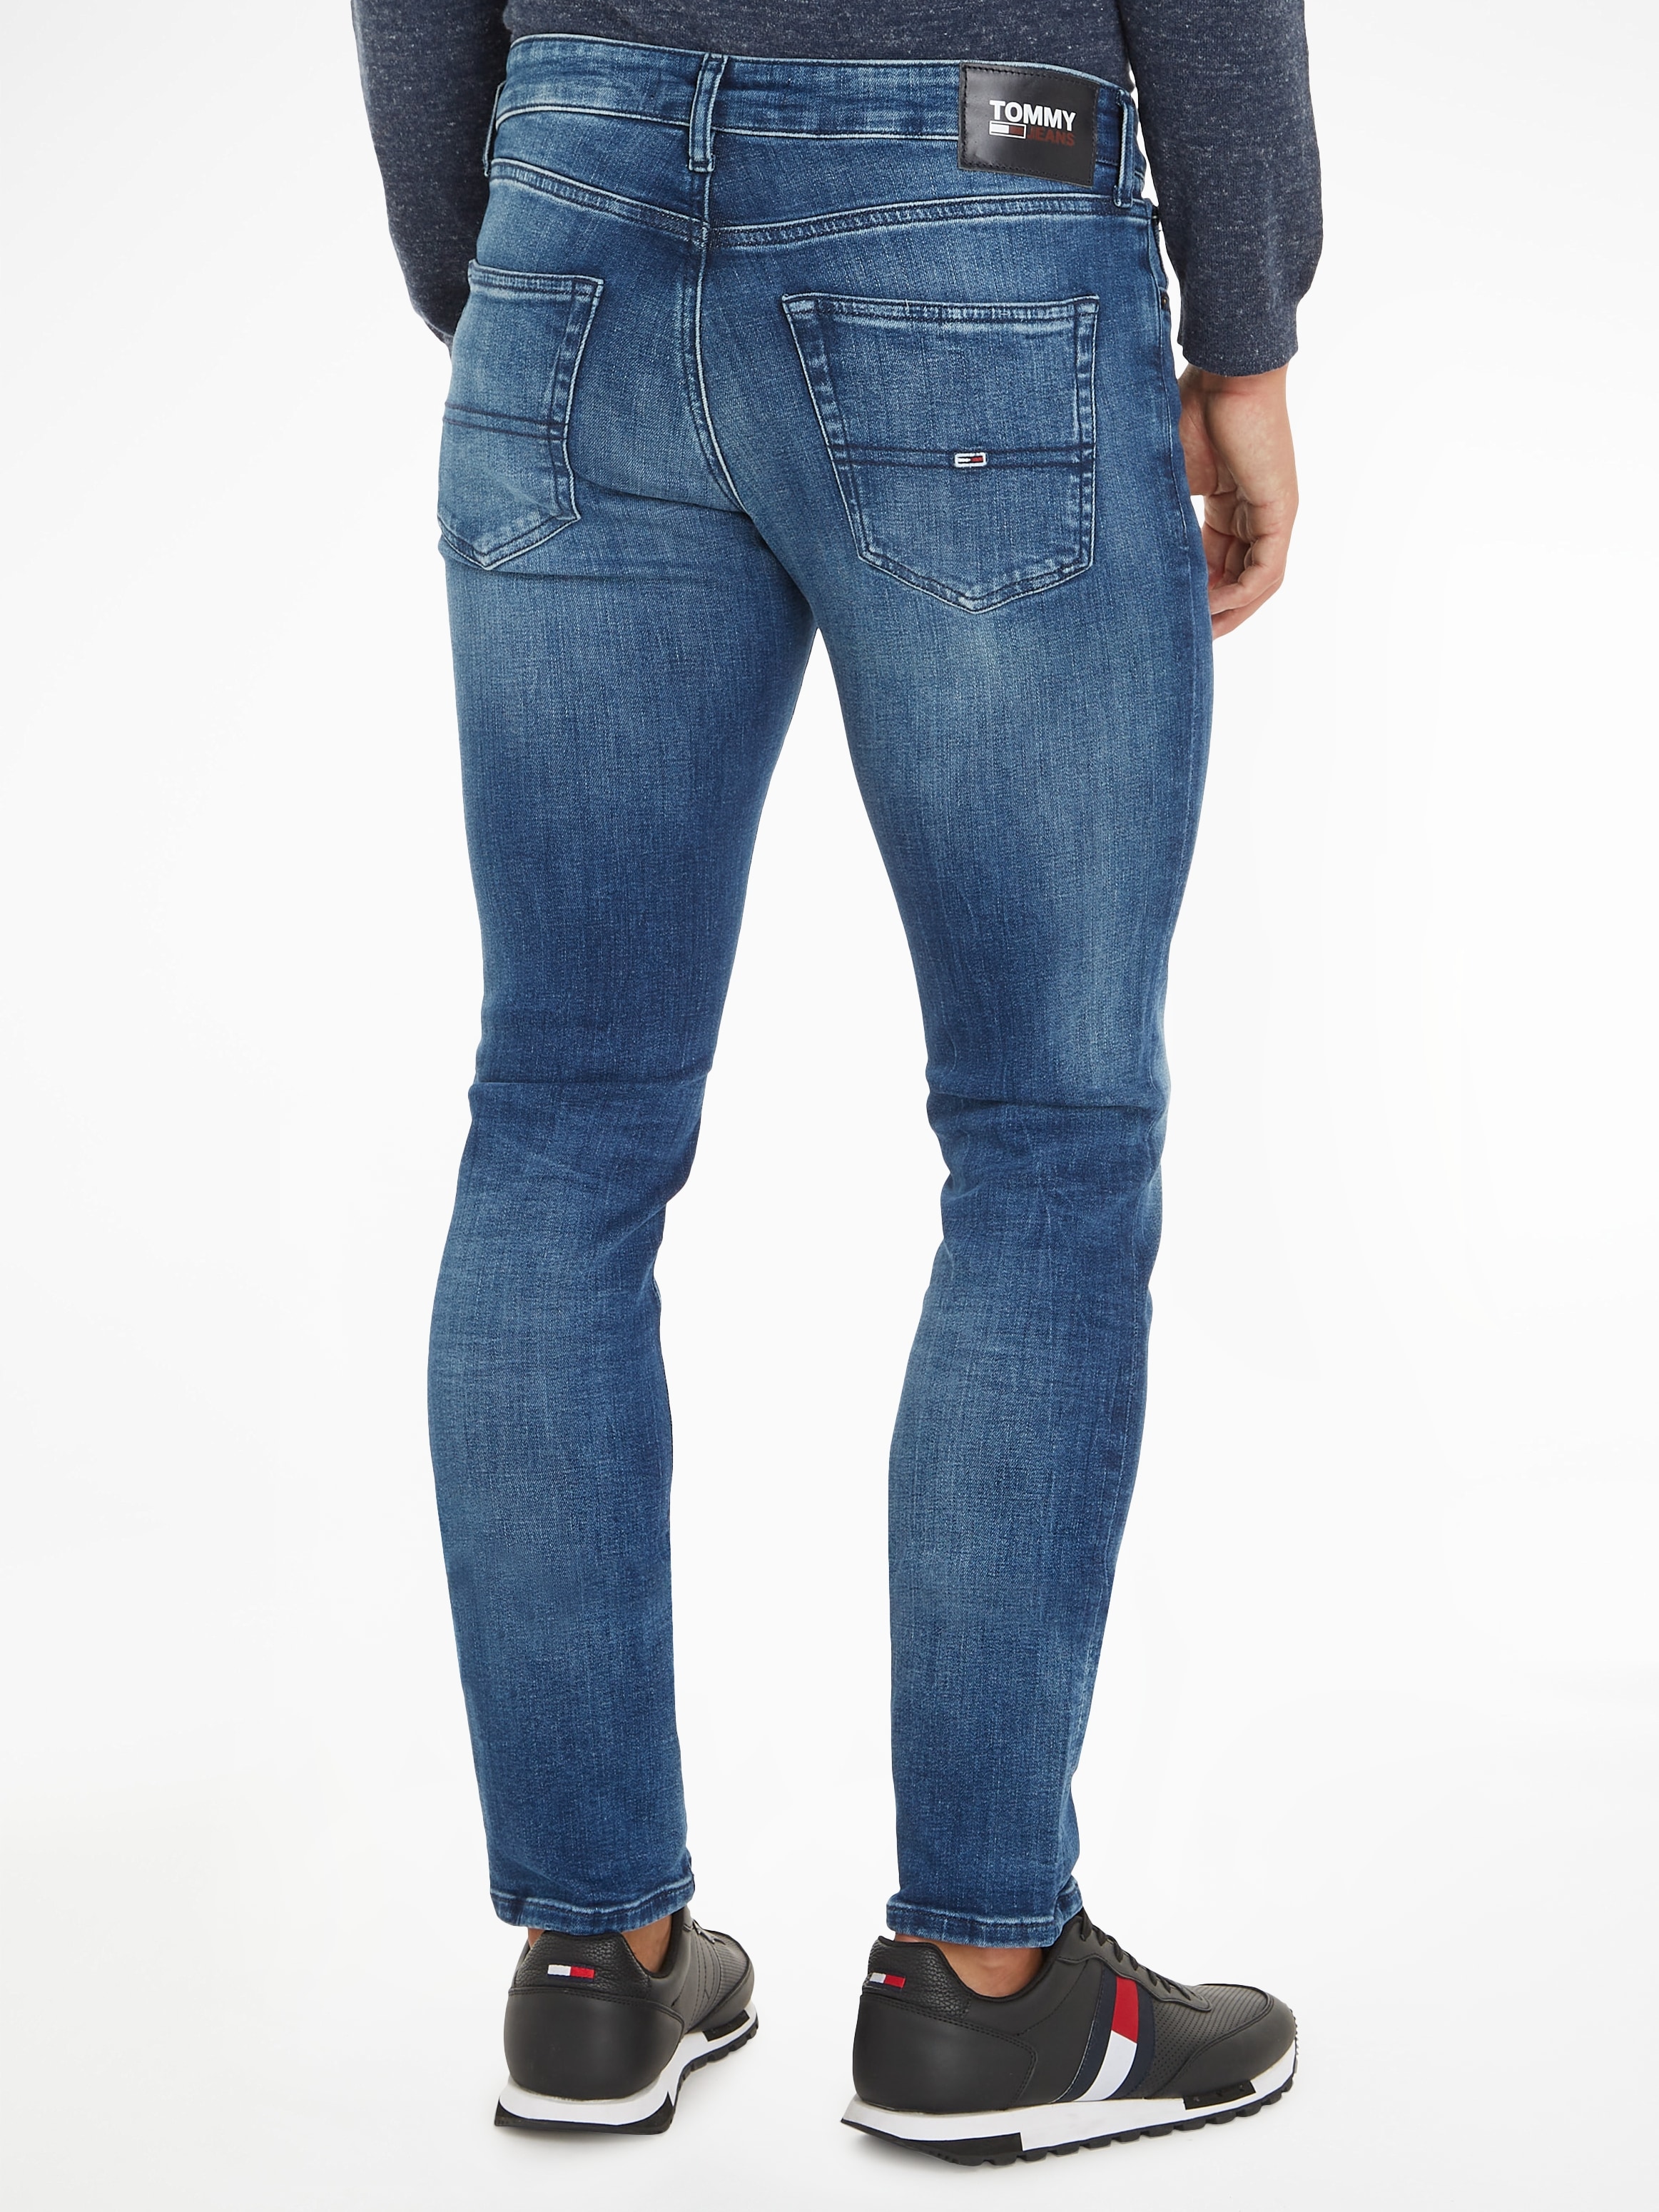 OTTO Jeans online »SCANTON bei SLIM« Tommy kaufen Slim-fit-Jeans